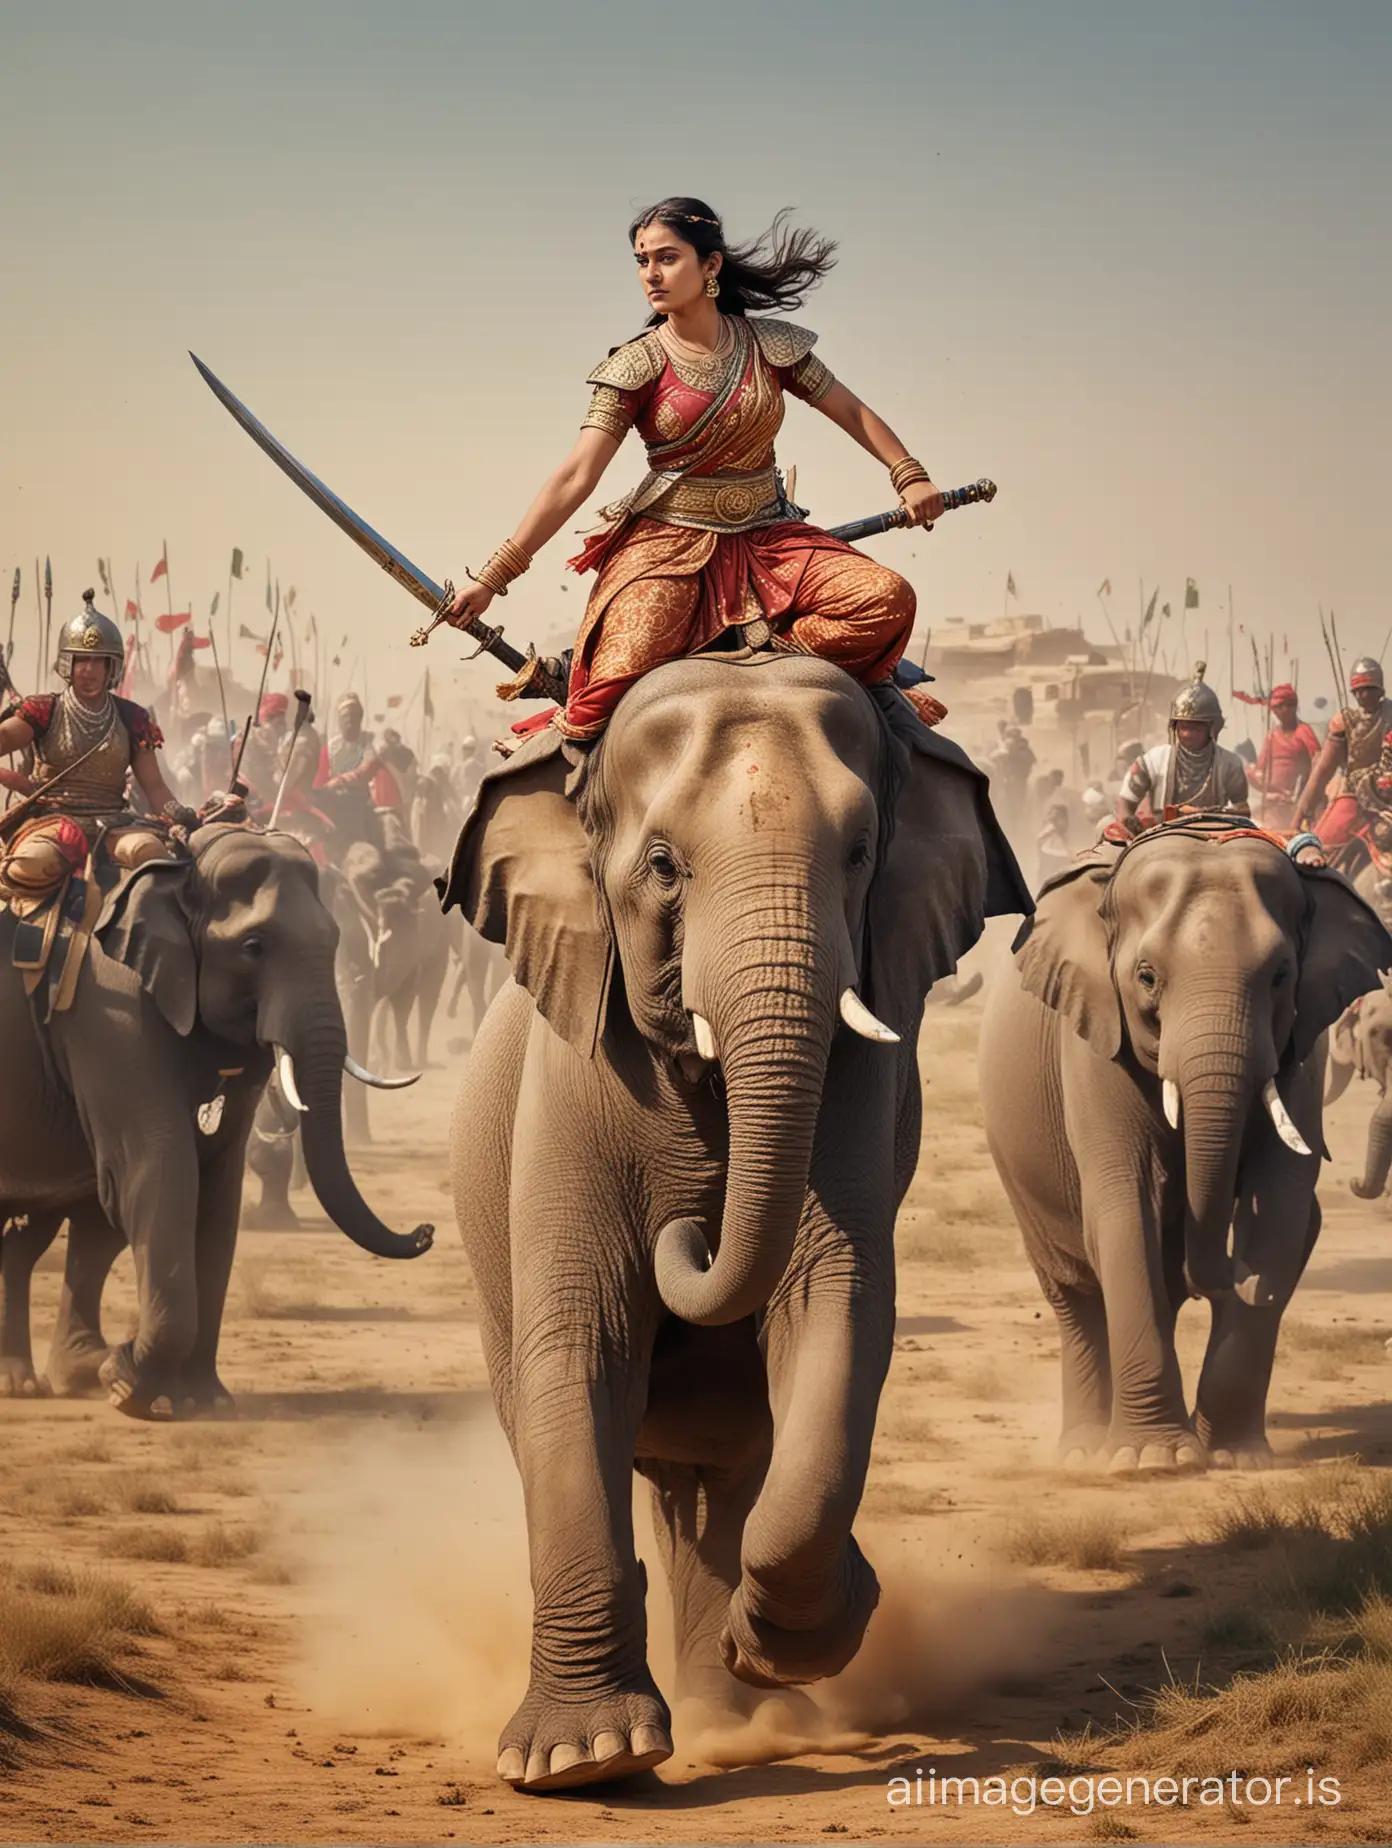 Female-Warrior-Riding-Elephant-in-Battle-Against-Mughal-Army